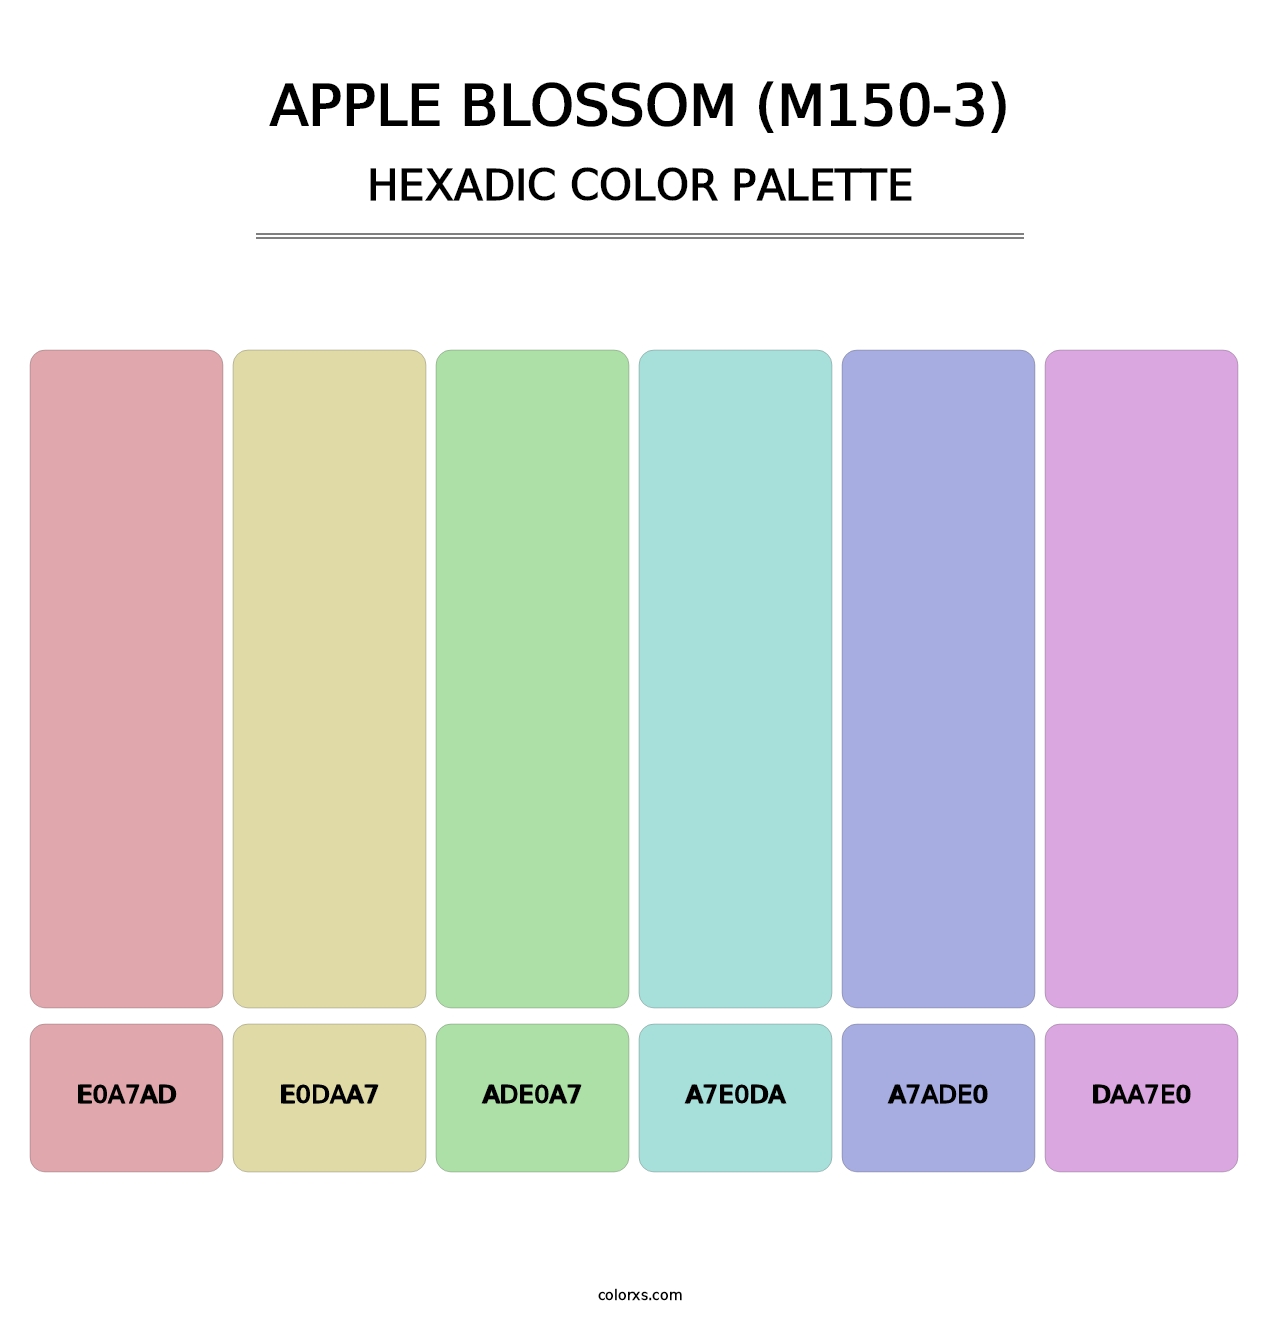 Apple Blossom (M150-3) - Hexadic Color Palette